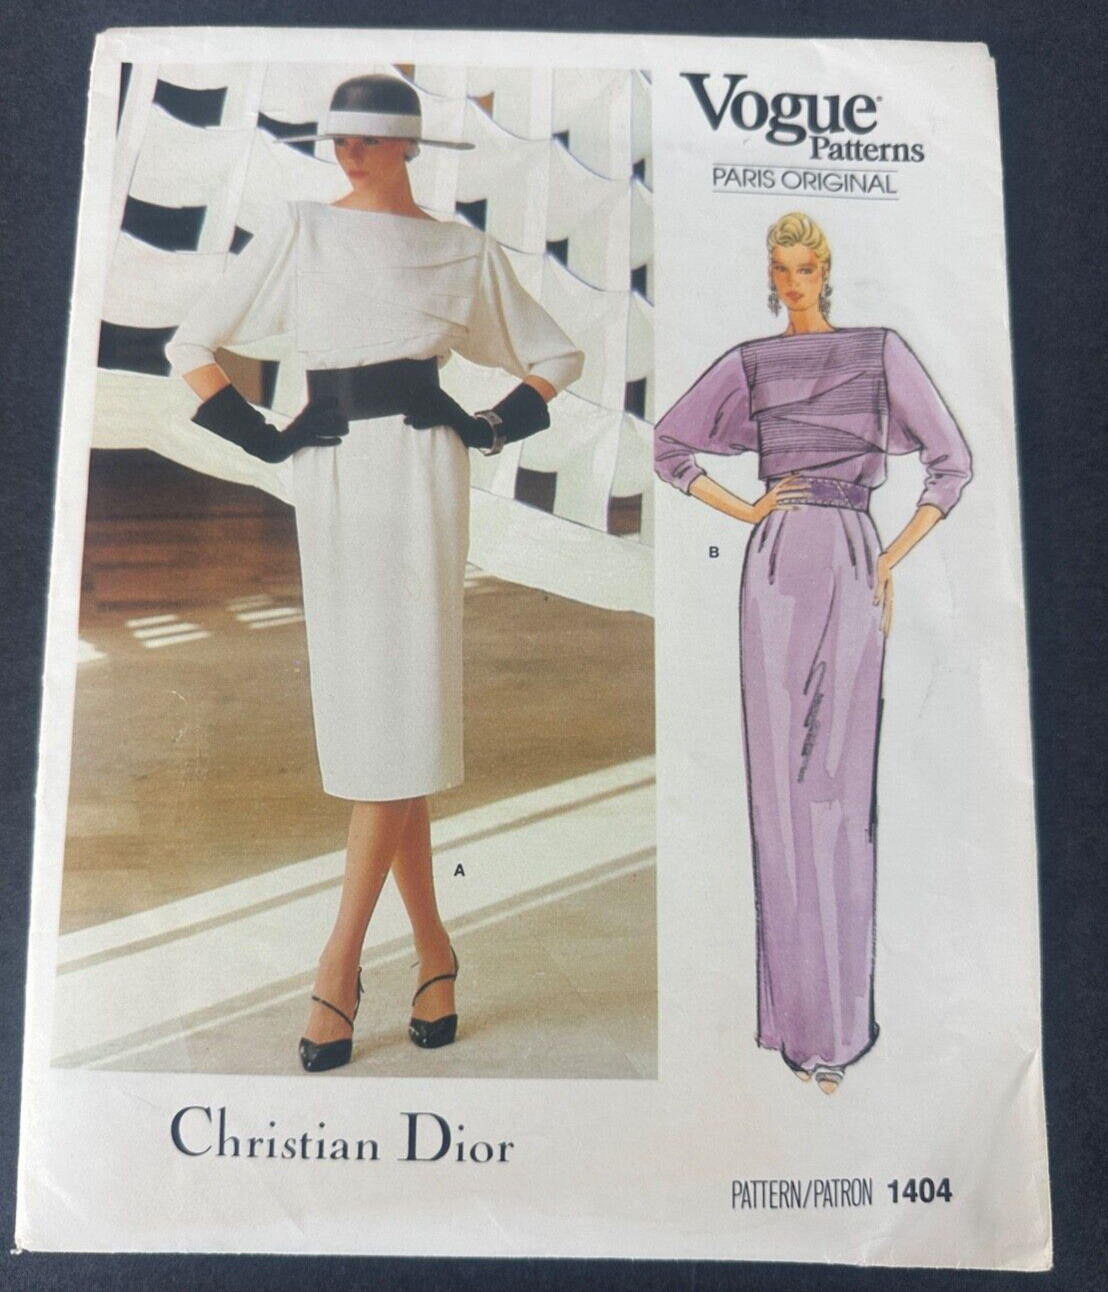 Vogue Paris Original Christian Dior dress pattern (1404) Size 12 Uncut